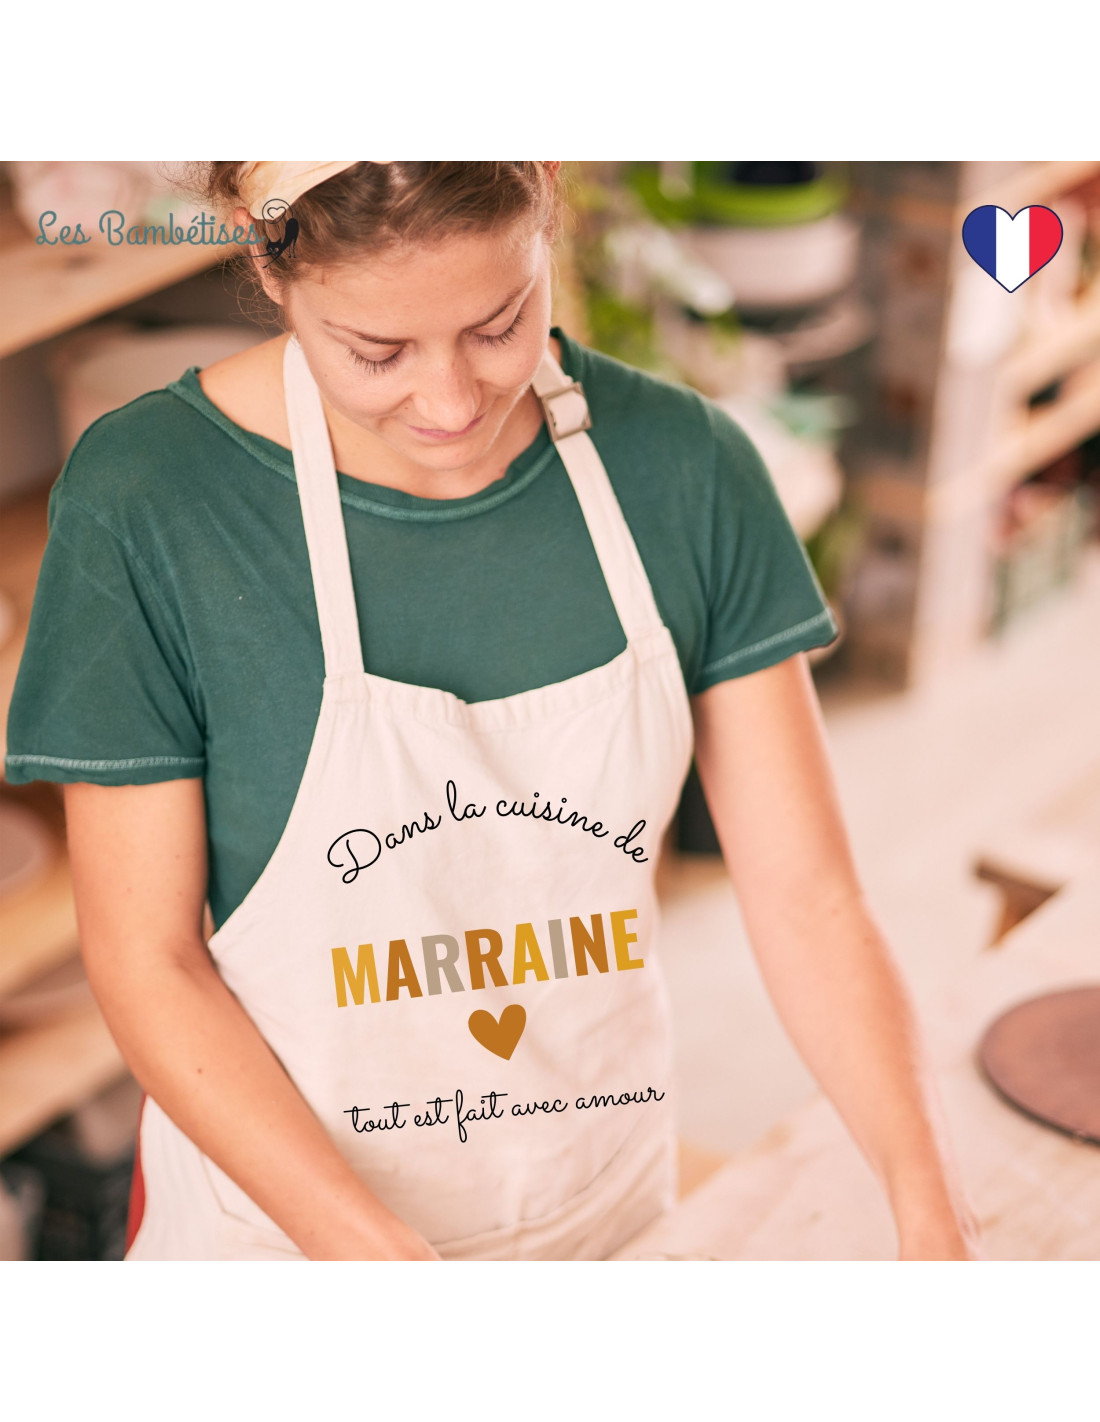 Tablier de Cuisine Personnalisé Marraine Terracotta - Les Bambetises